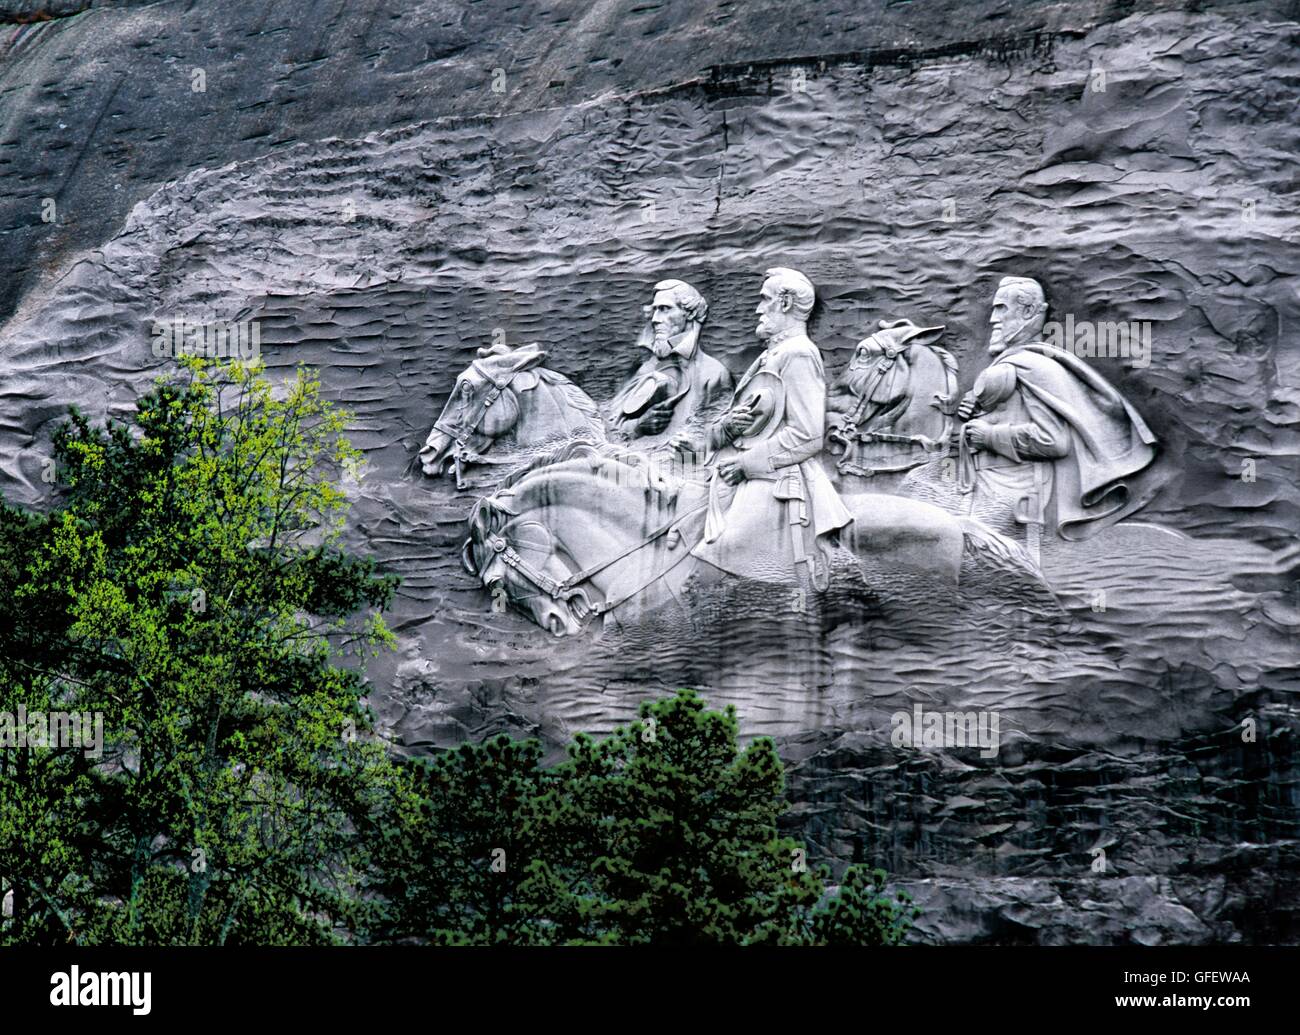 Dirigeants généraux confédérés davis, Lee et jackson quartz rock face.. Sculpture Stone Mountain Park, Atlanta, Georgia, USA Banque D'Images